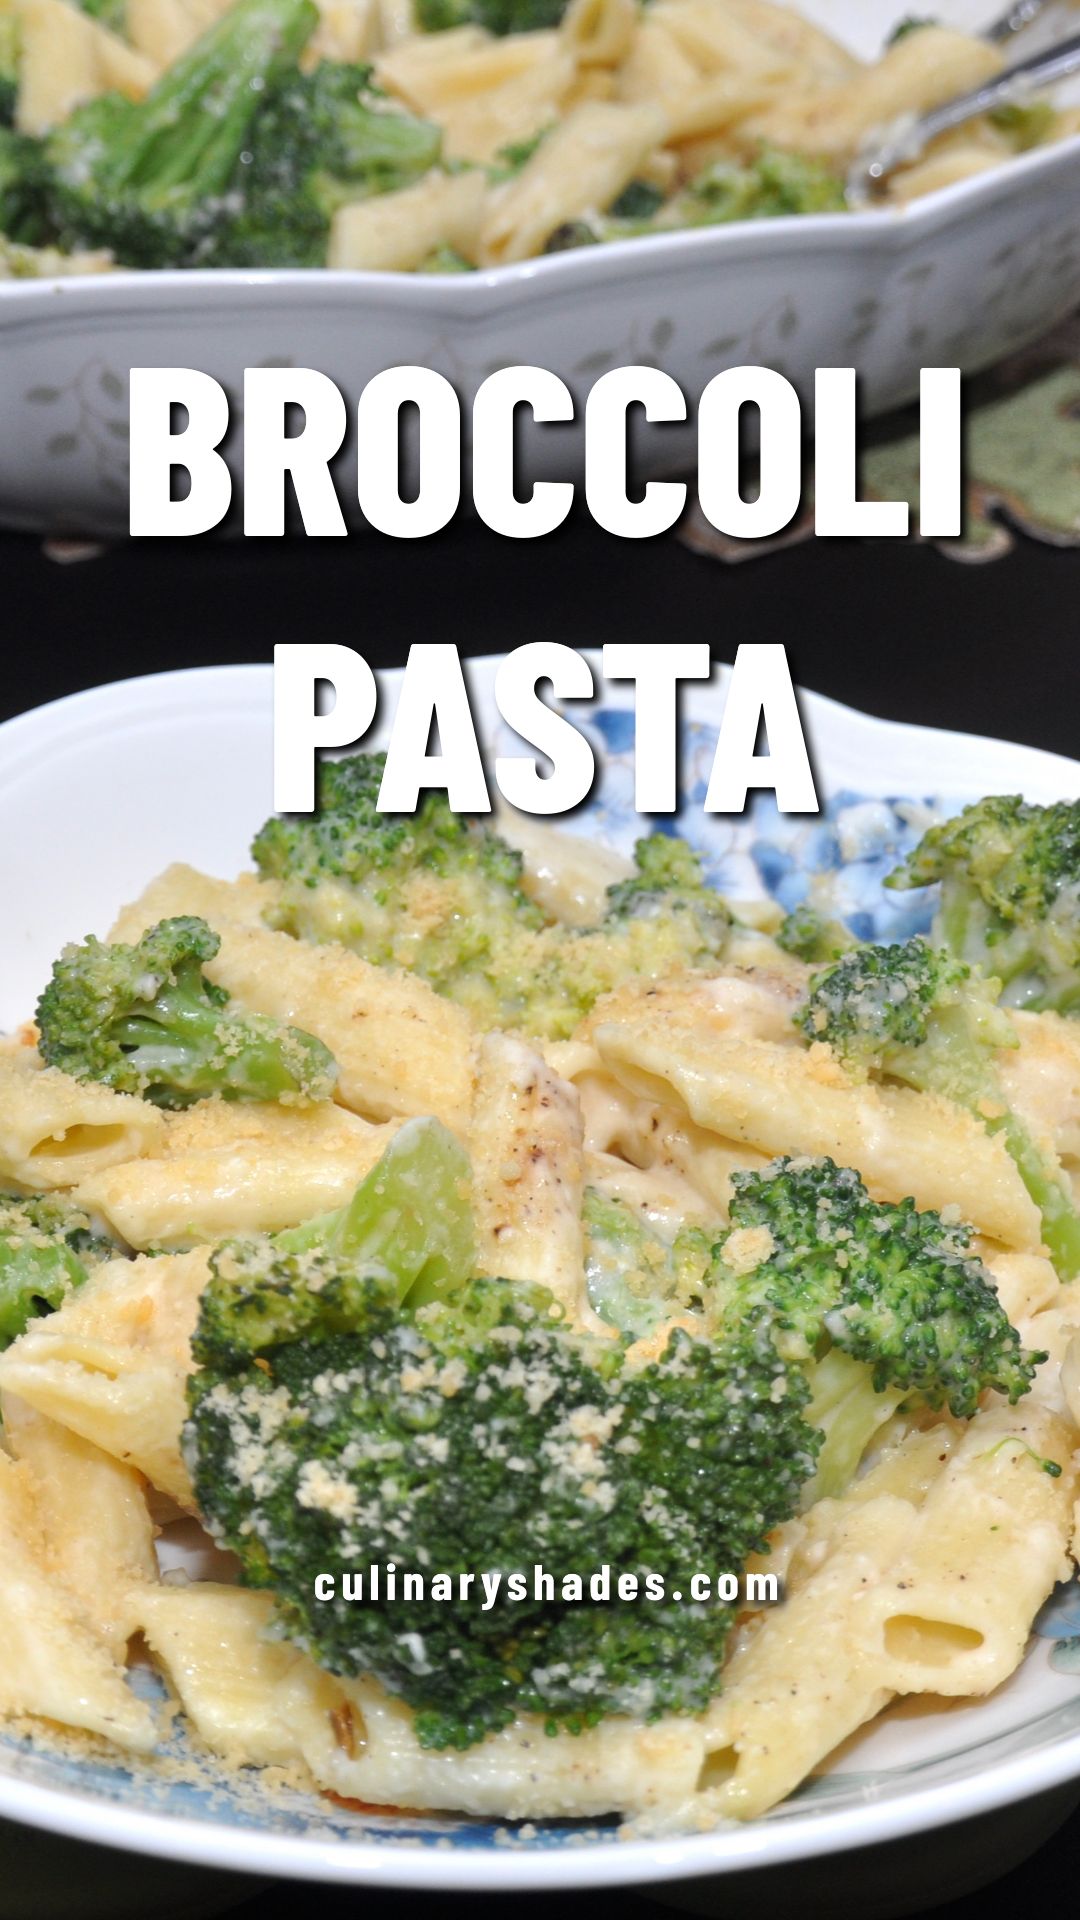 Broccoli pasta in a pasta bowl.